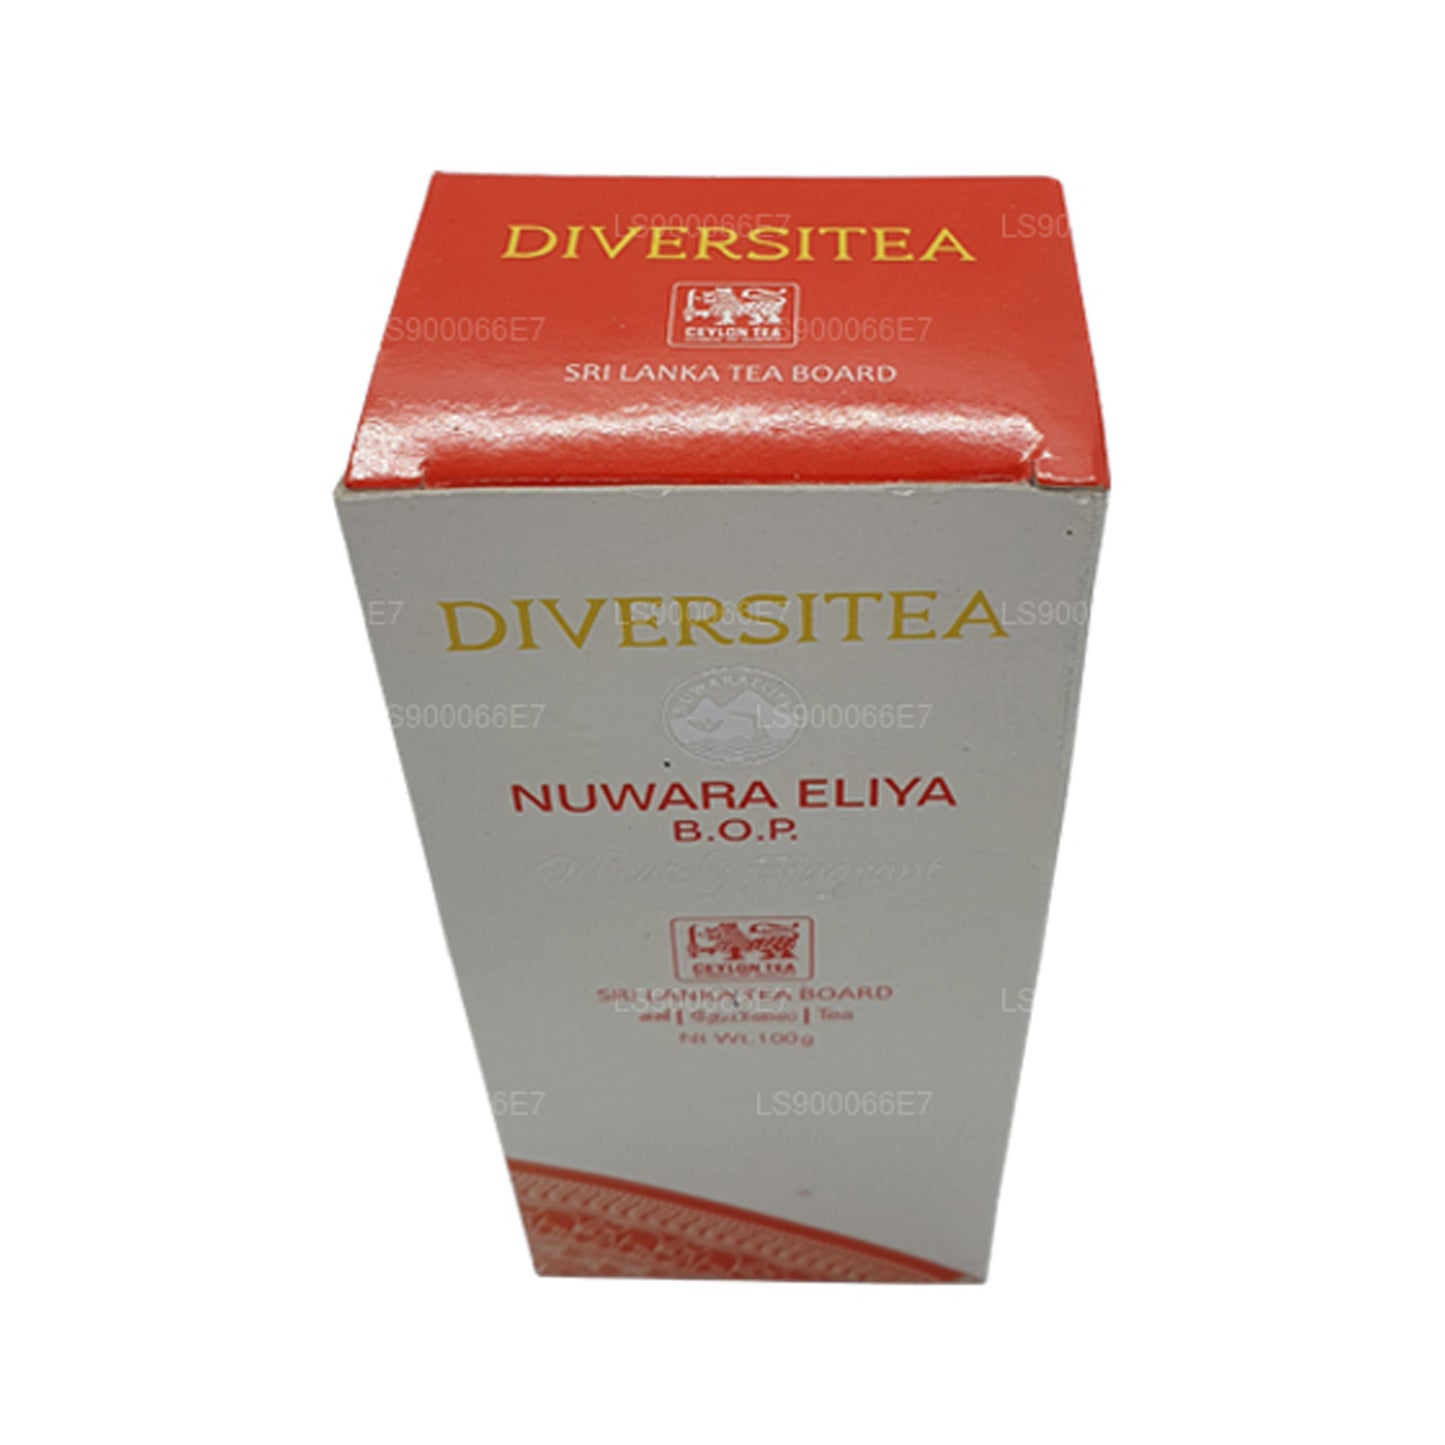 Lakpura Single Region Nuwara Eliya Black Tea